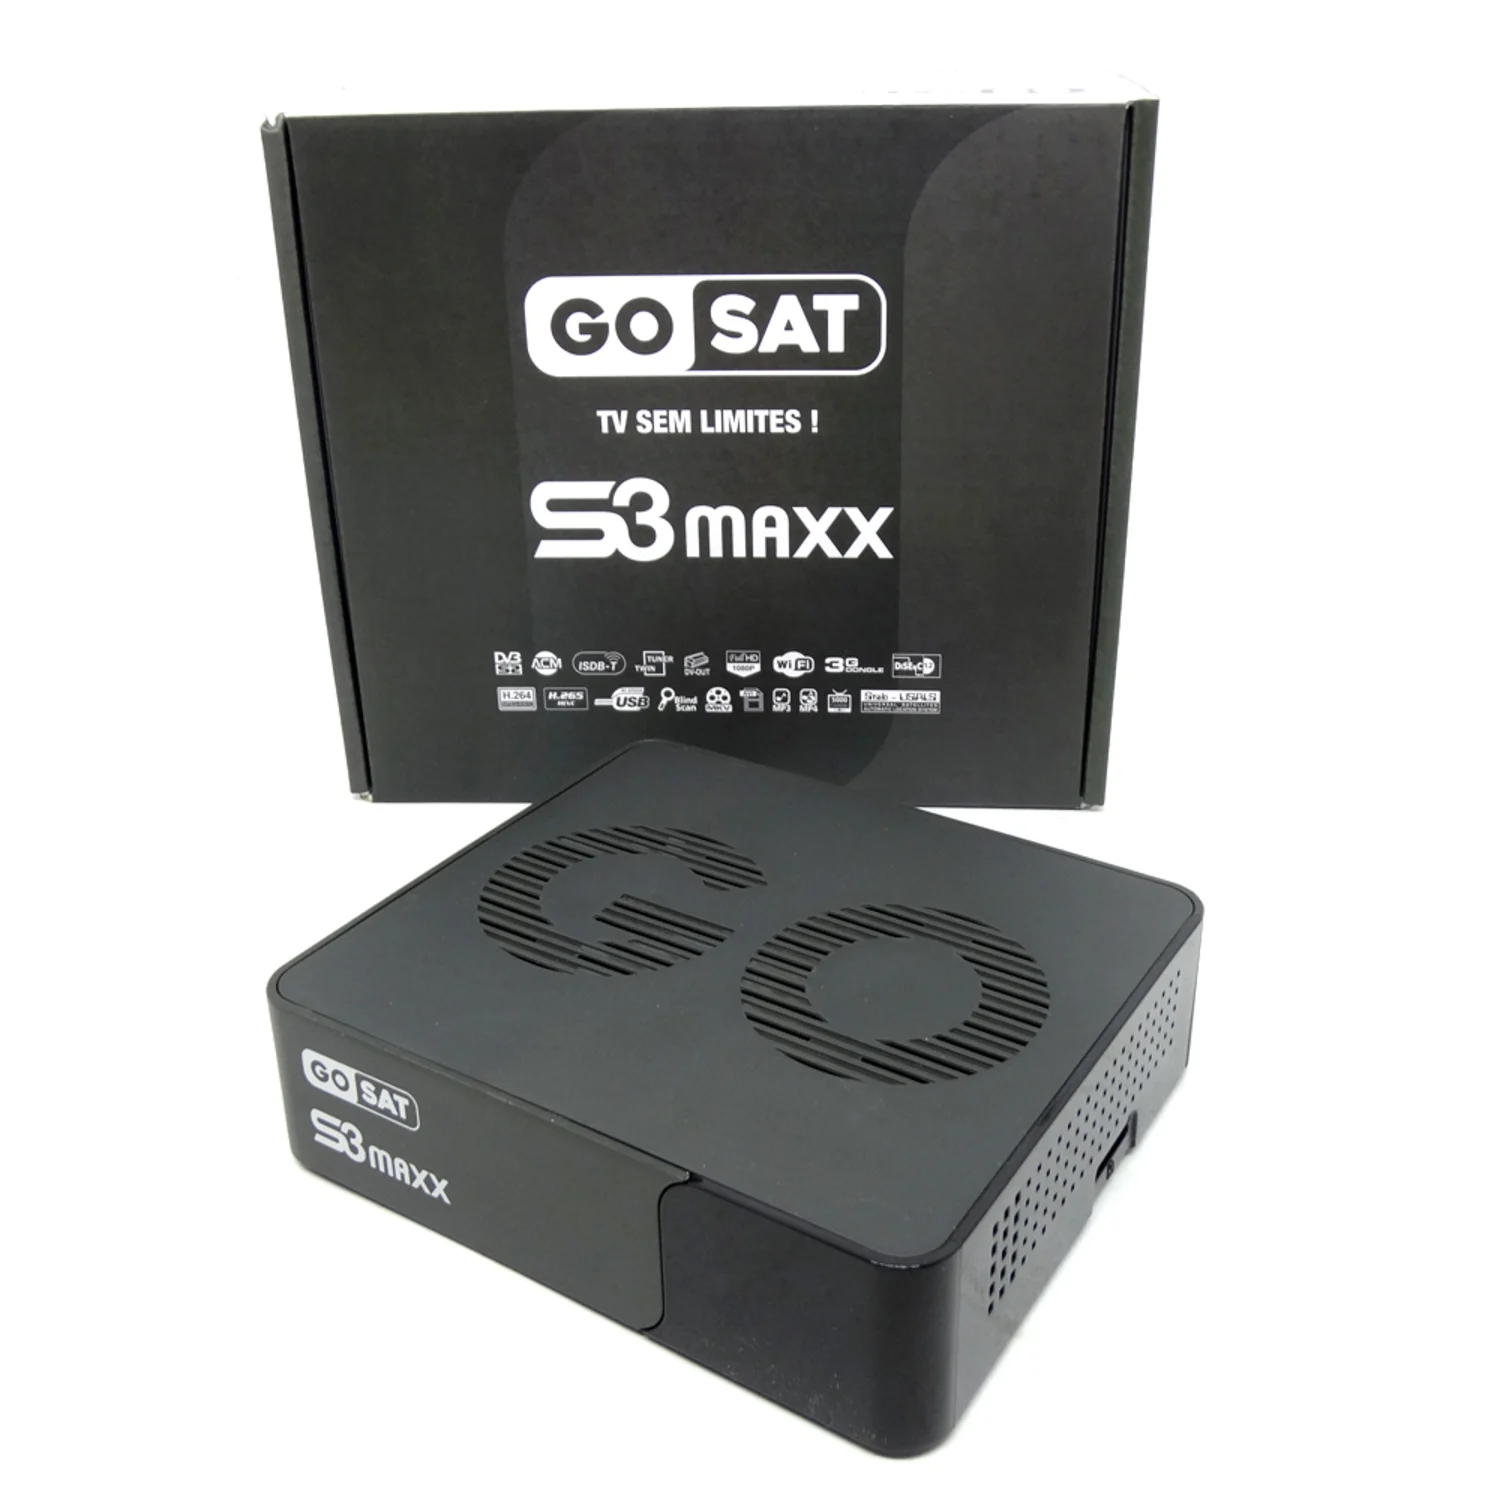 Receptor GOSAT S3 MAXX Full HD 8MB 256MB RAM Wi-Fi - Preto